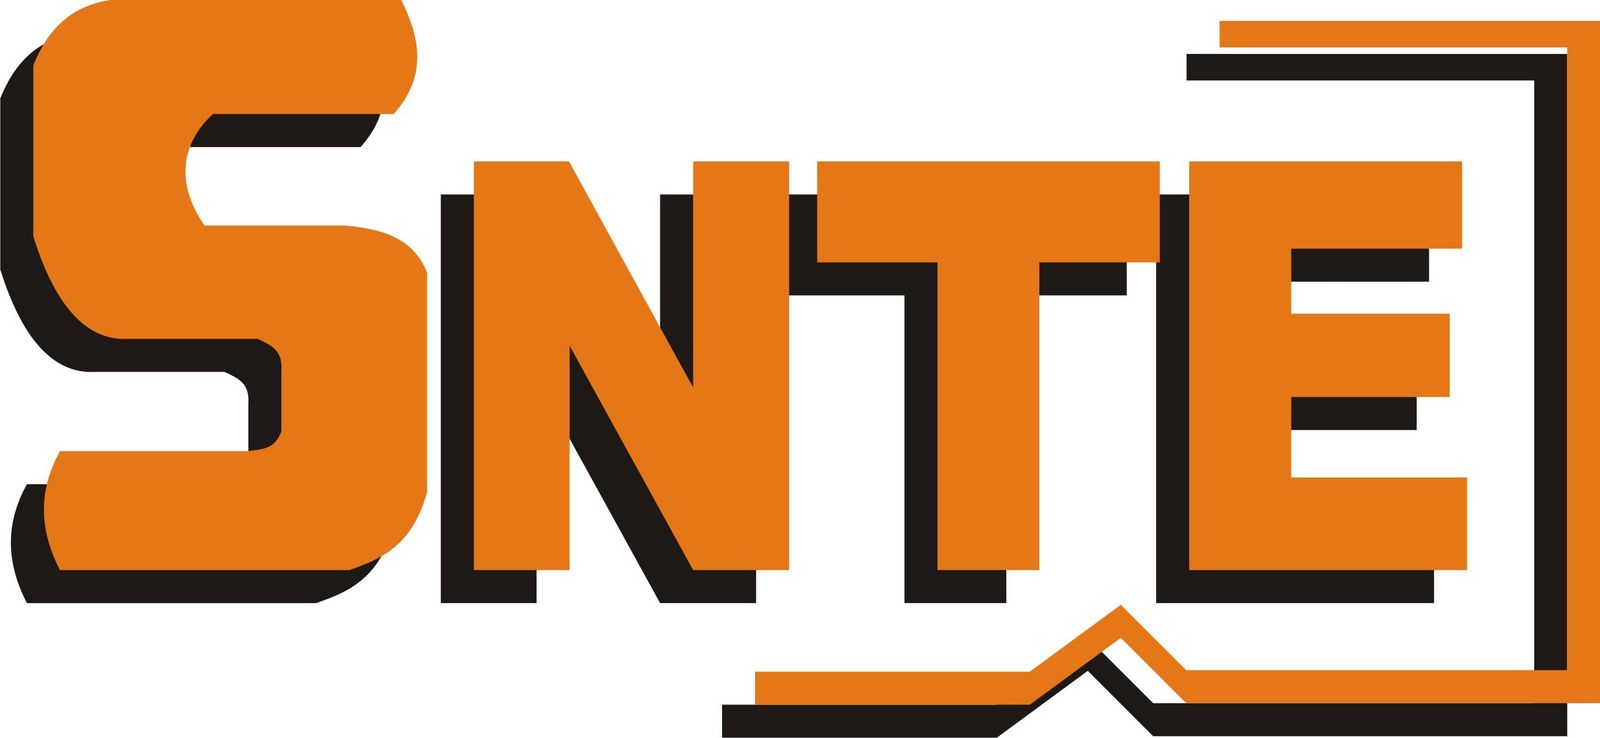 SNTE Seccion Logo photo - 1